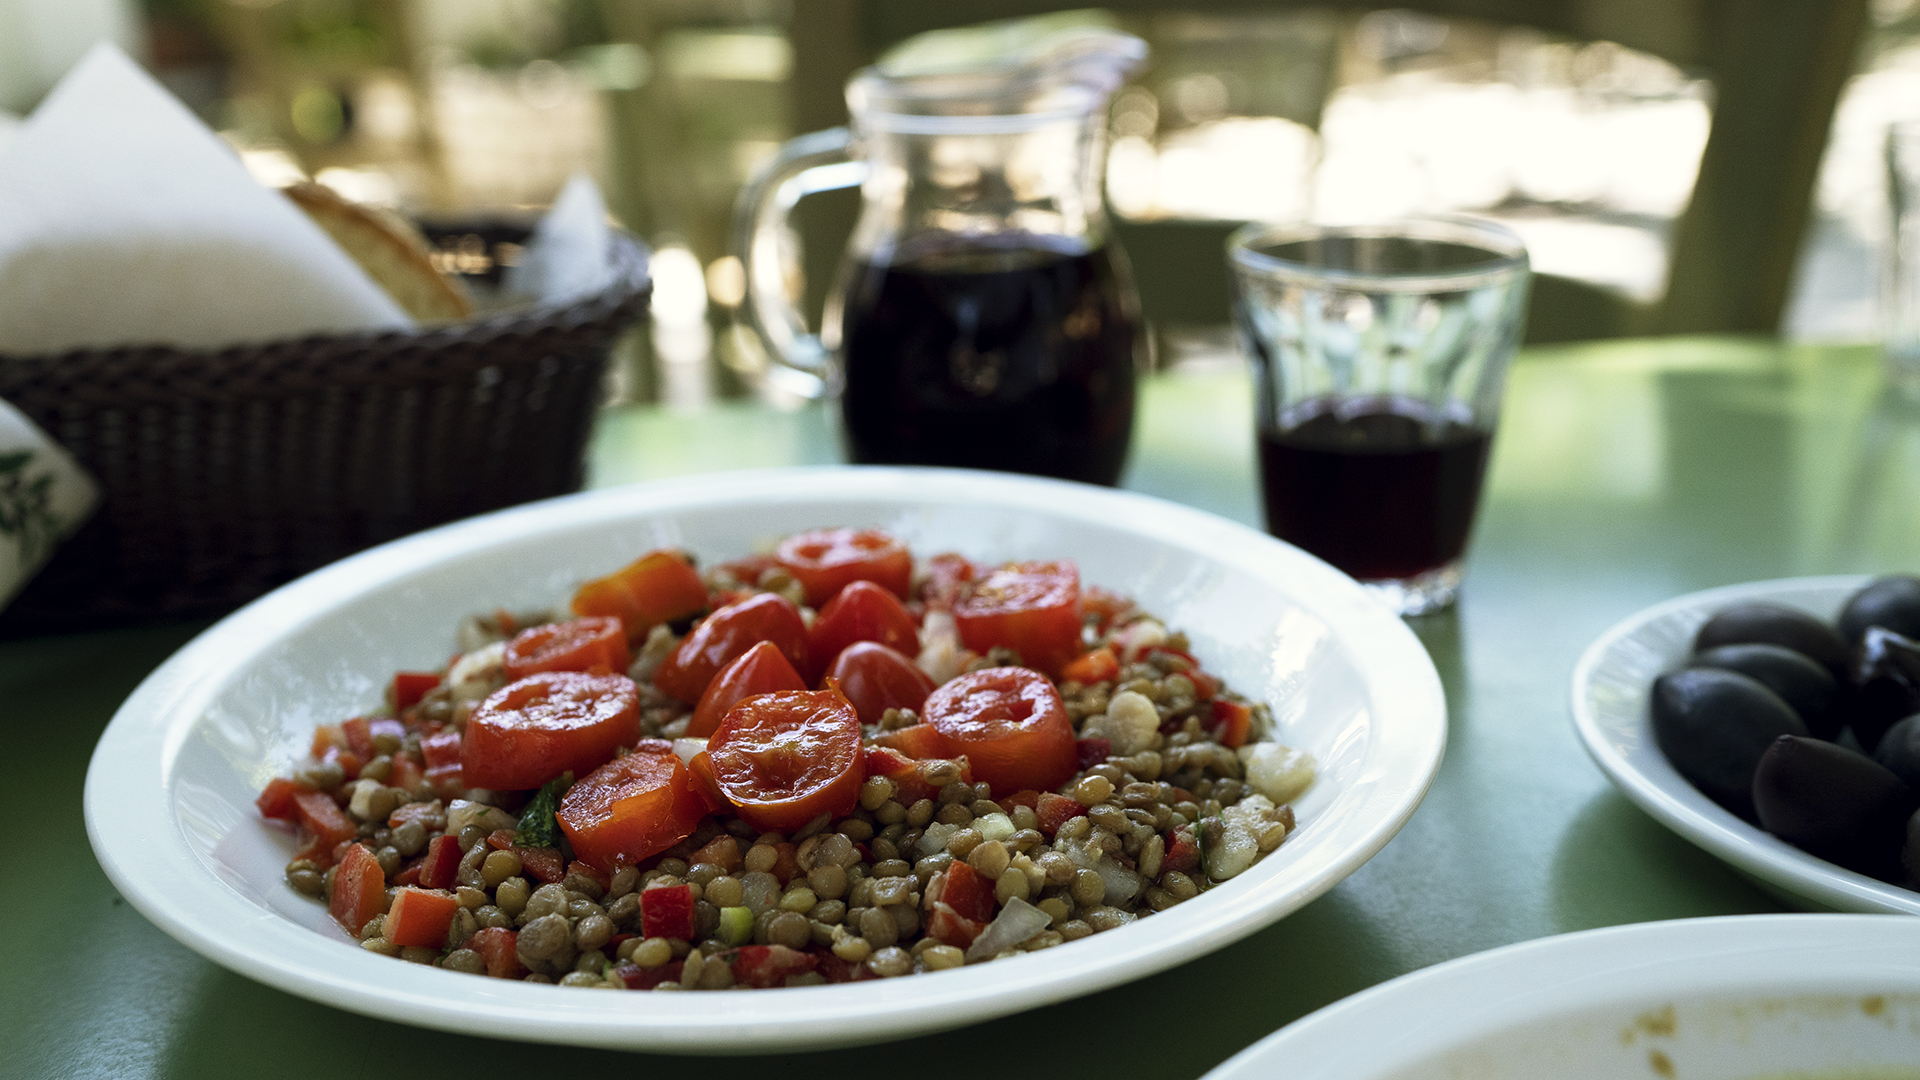 Lefkadas' lentils are famed for their taste